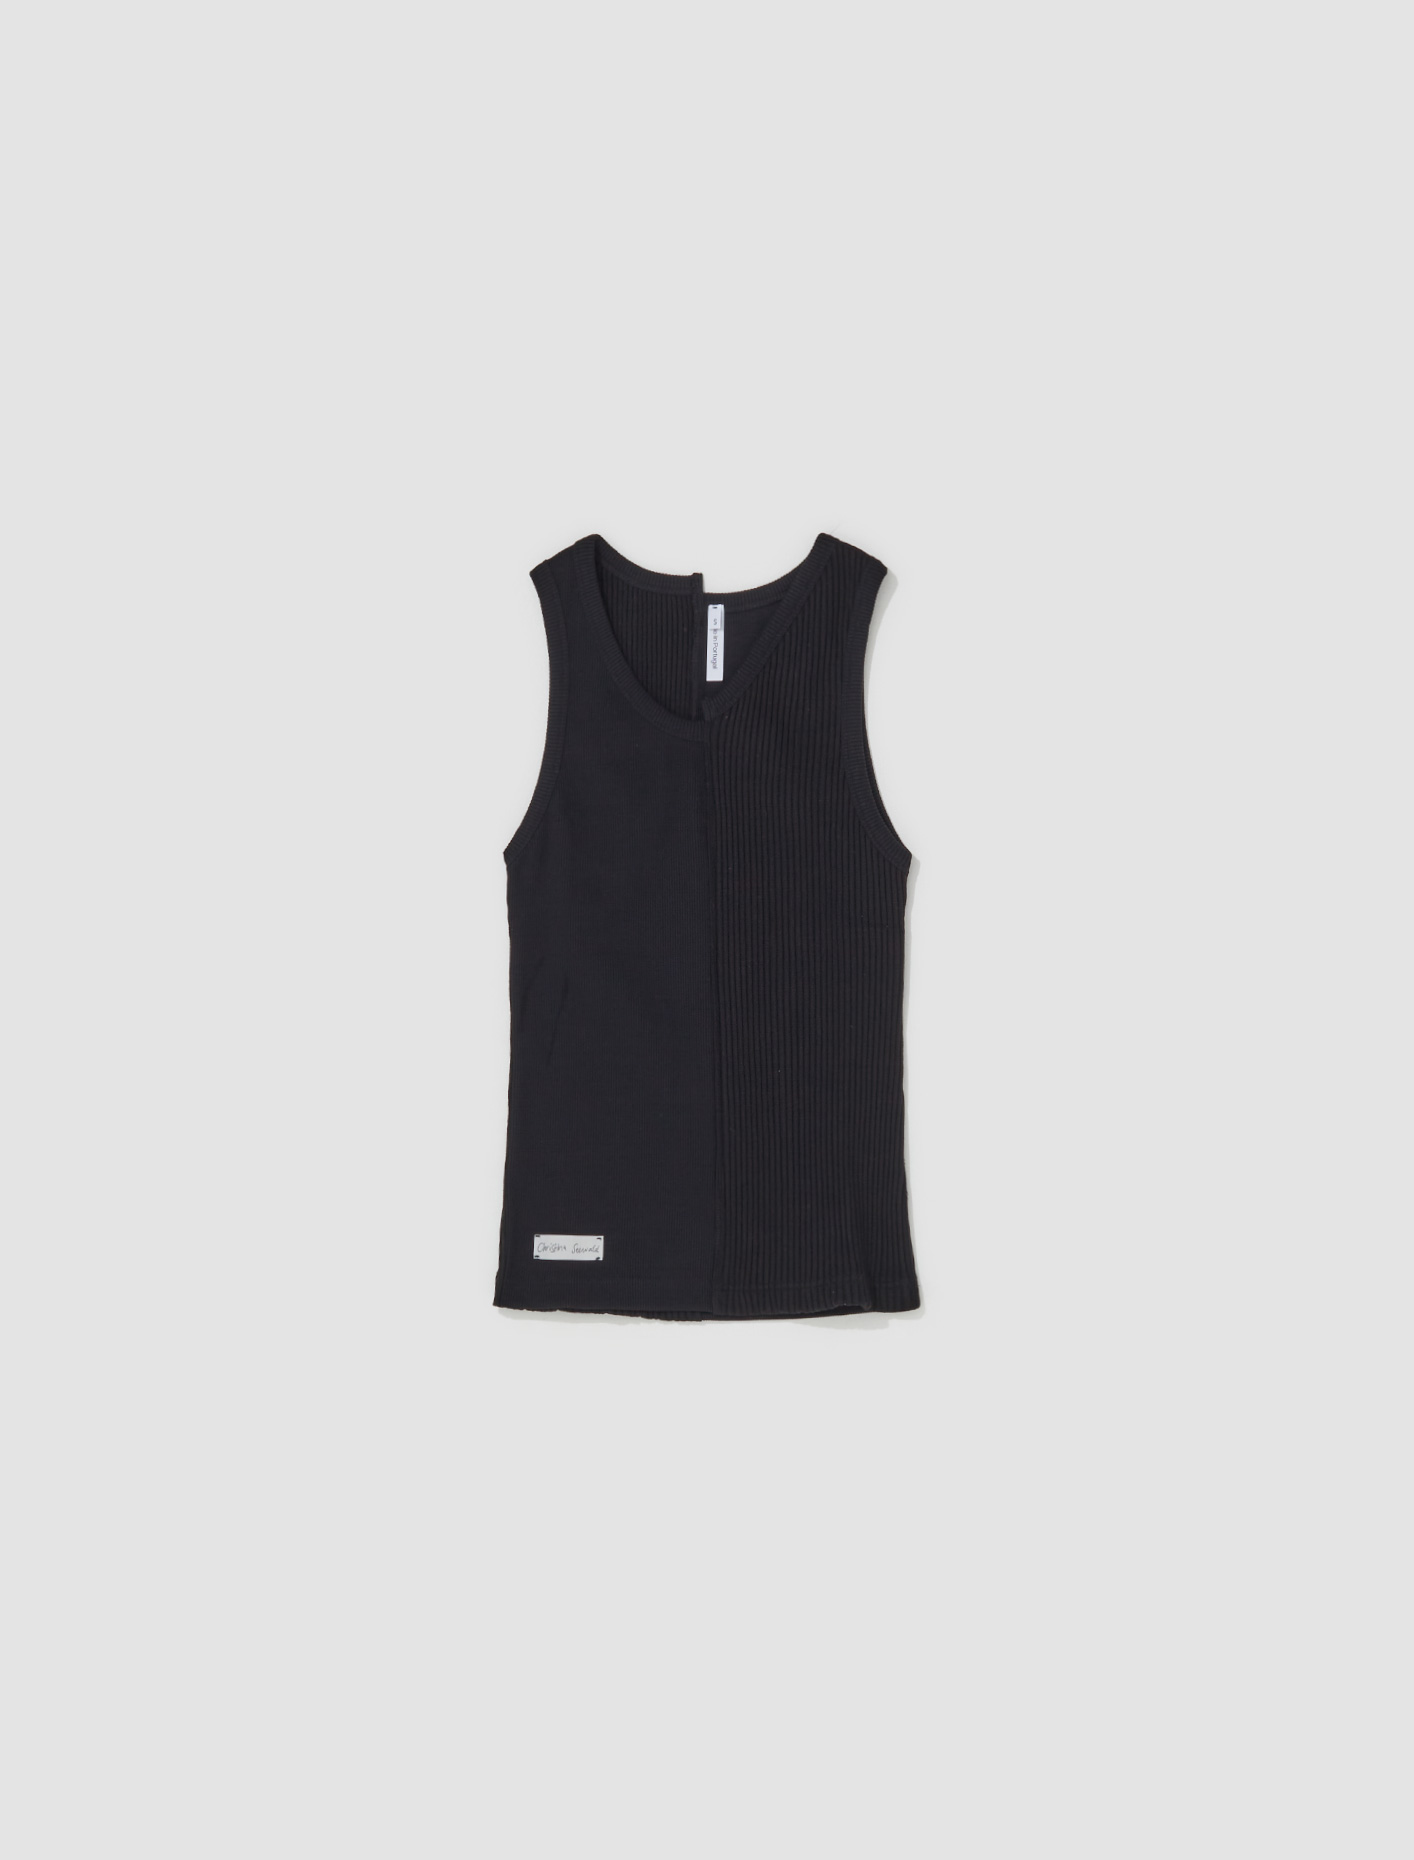 Christina Seewald Asymmetric Vest Top in Black | Voo Store Berlin